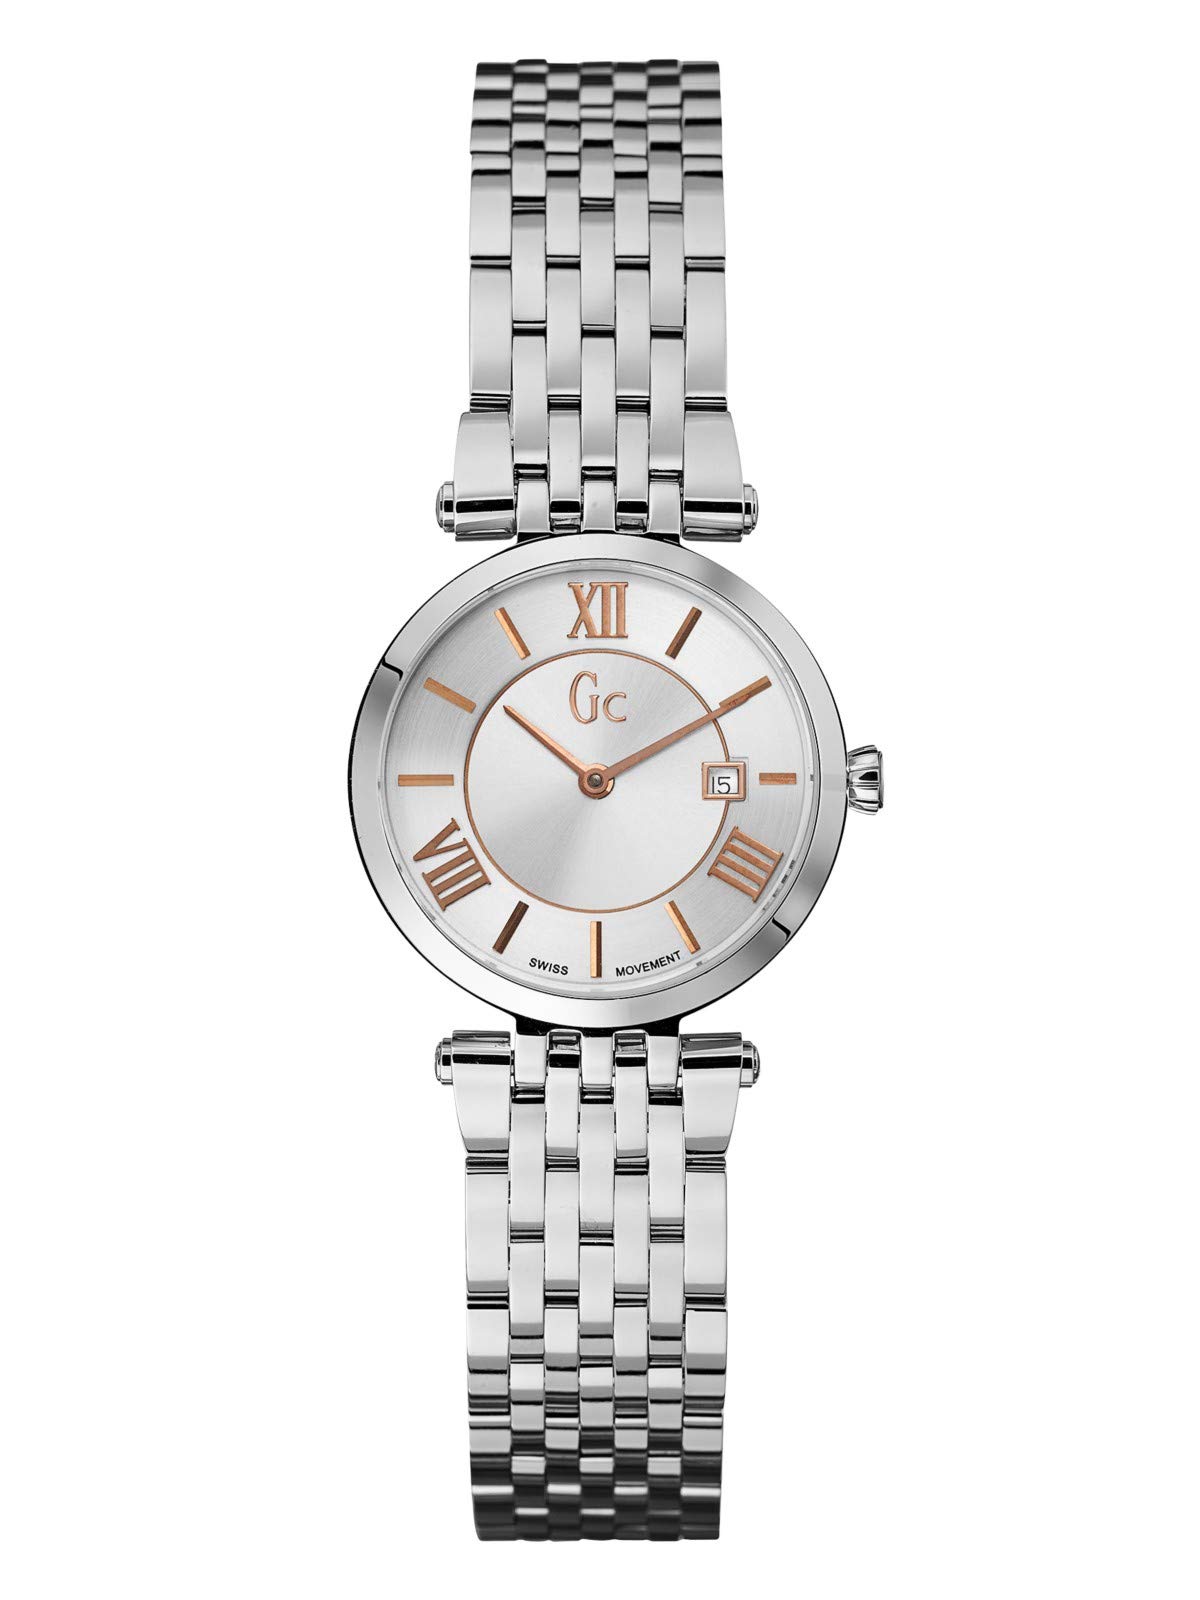 X57001l1s Womens Analog Quartz Watch with Stainless Steel Bracelet X57001L1S